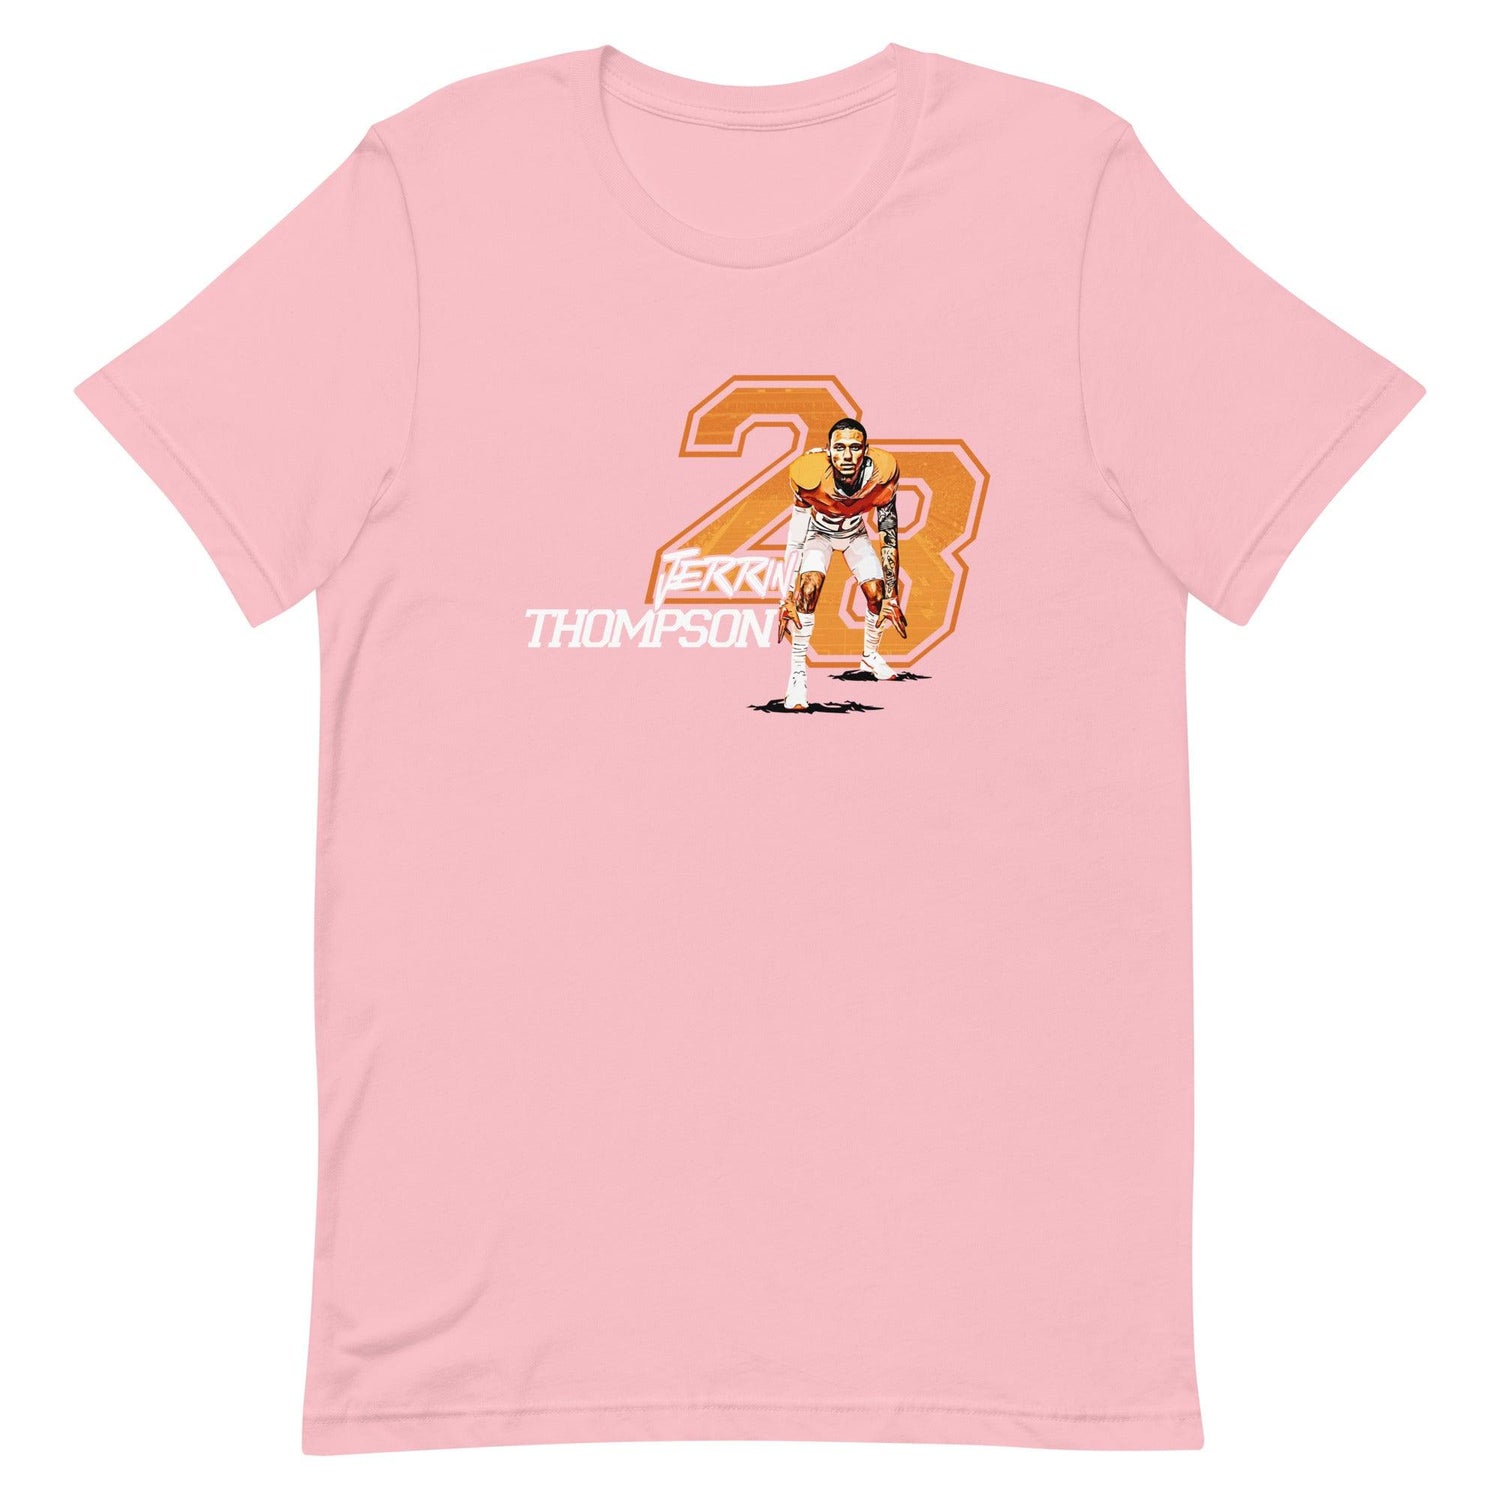 Jerrin Thompson "Jersey" t-shirt - Fan Arch